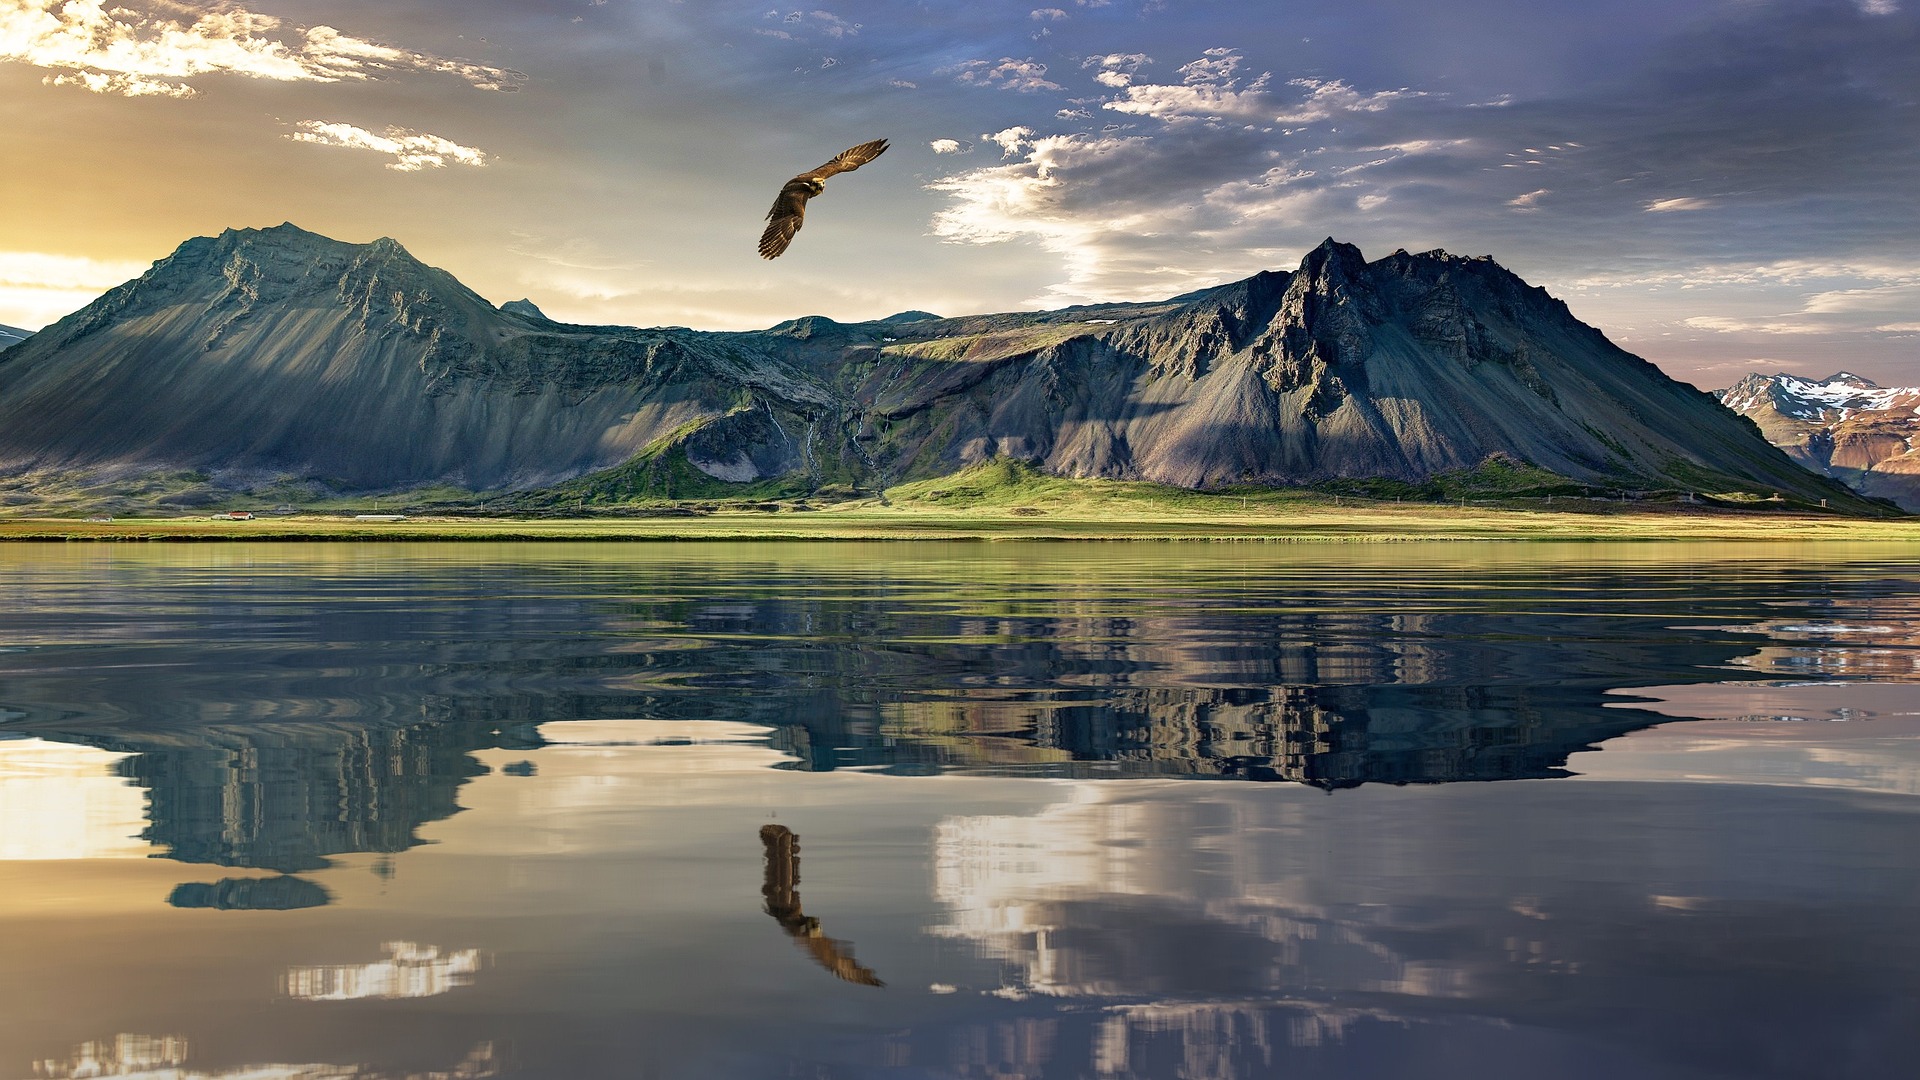 Un aigle volant au dessus d'un lac et de montagnes - Image par Ondřej Šponiar de https://pixabay.com/fr/photos/aigle-montagnes-lac-r%C3%A9flexion-1450672/